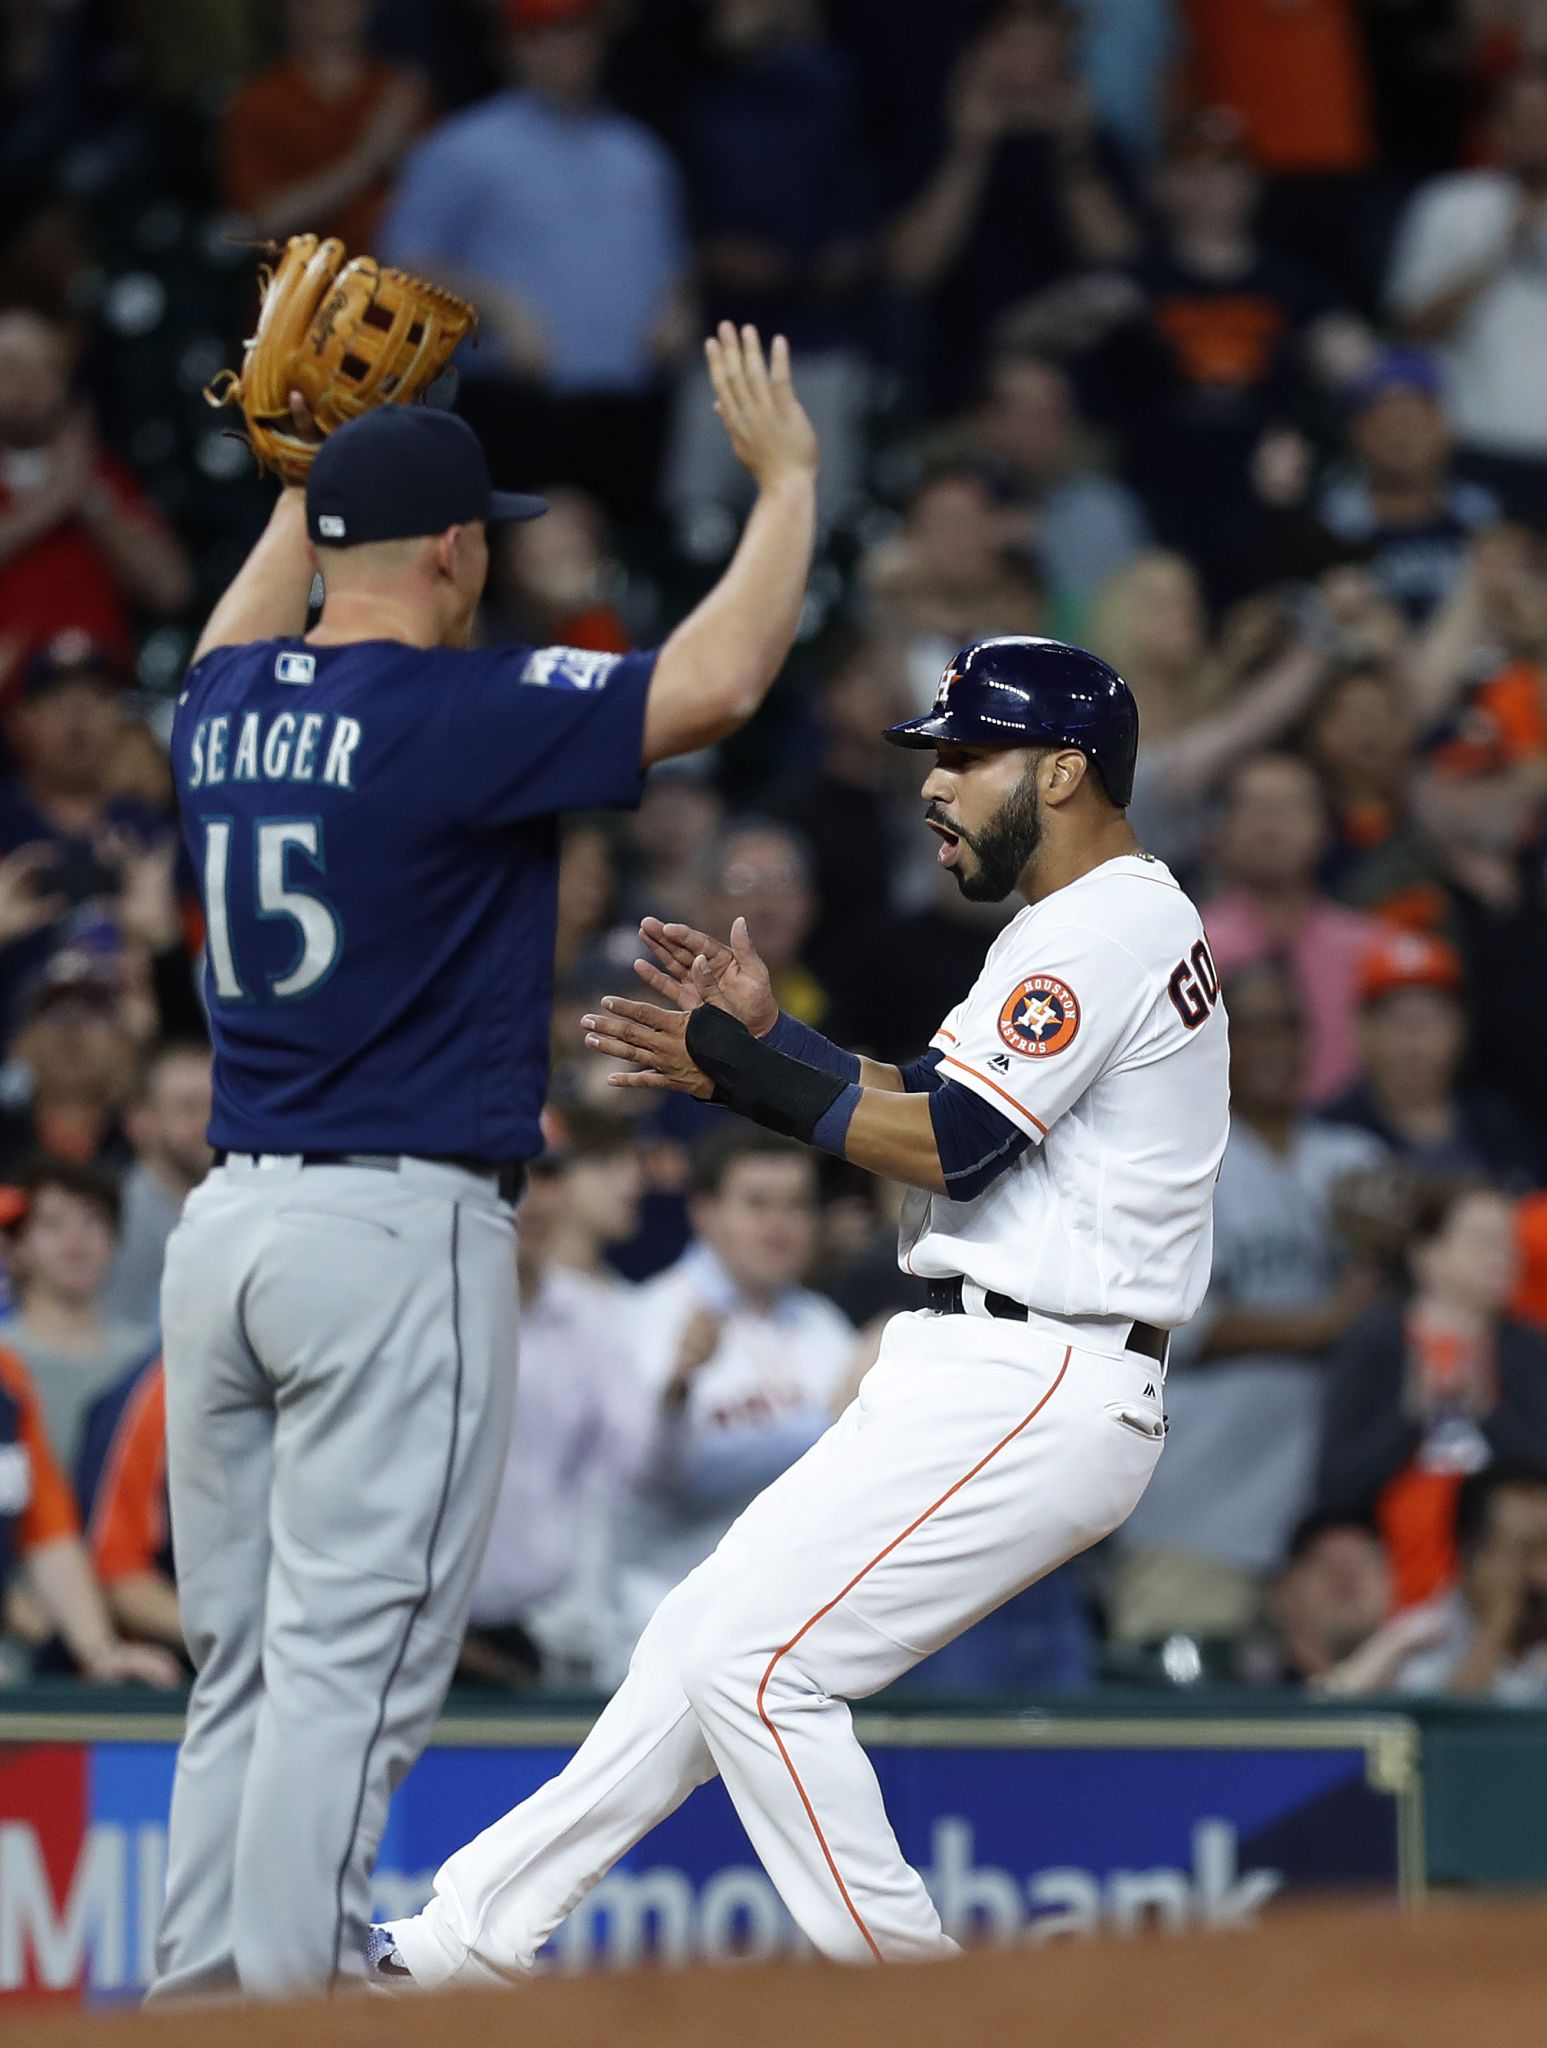 Astros report: Springer gets his first dinger